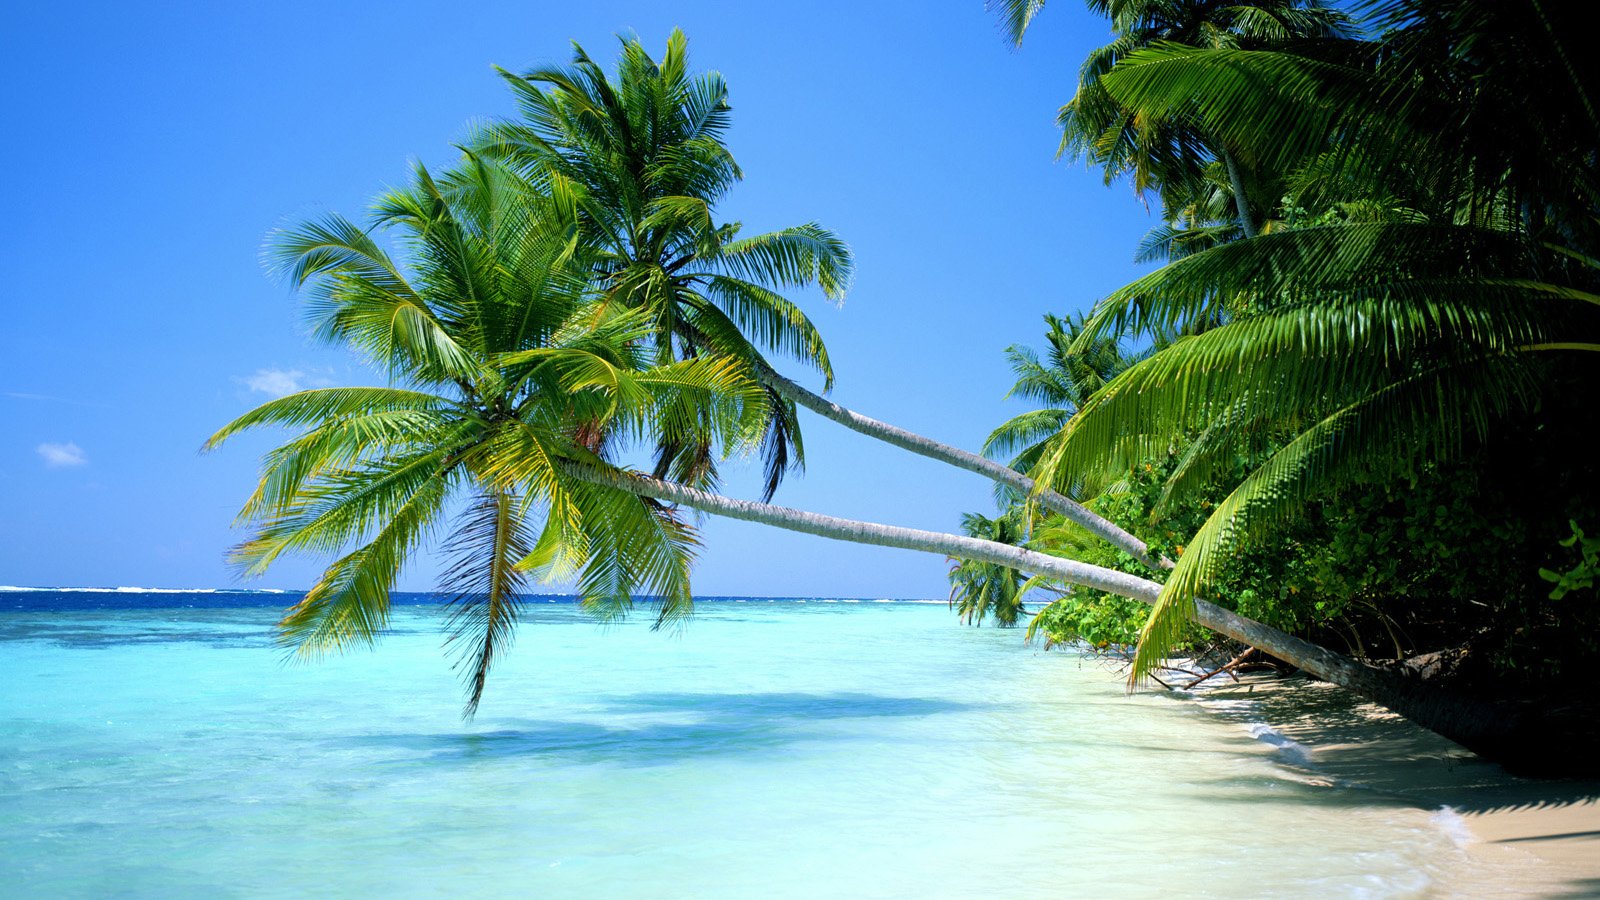 Tropical Beach Desktop Wallpaper 1600x900 pixel Popular HD Wallpaper